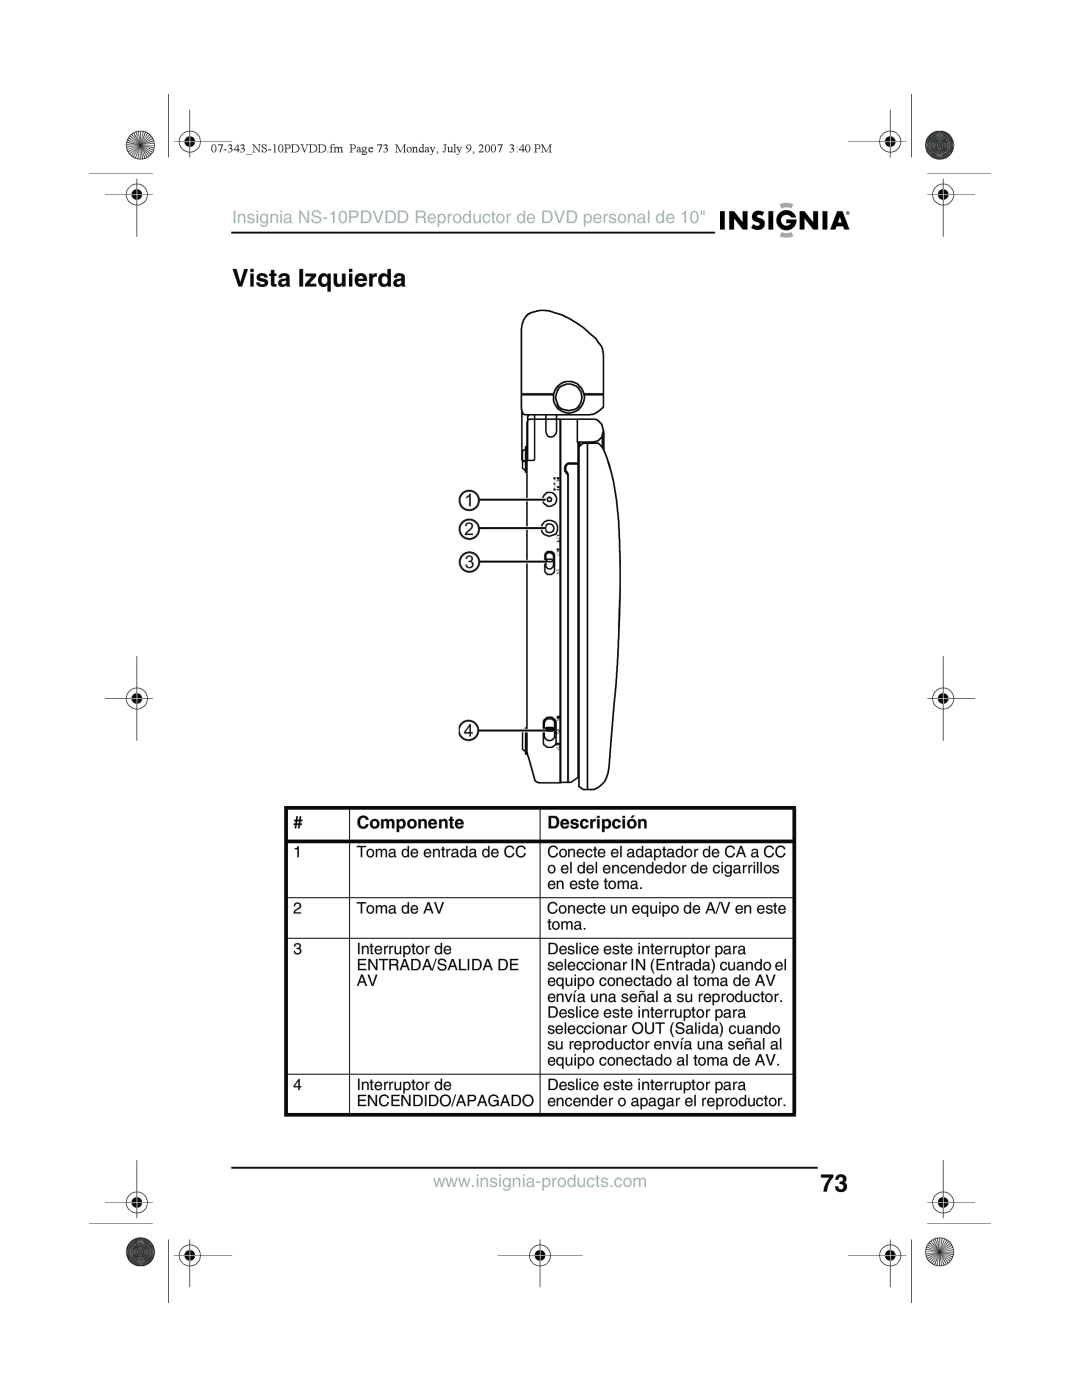 Insignia manual Vista Izquierda, Insignia NS-10PDVDD Reproductor de DVD personal de, Componente, Descripción 